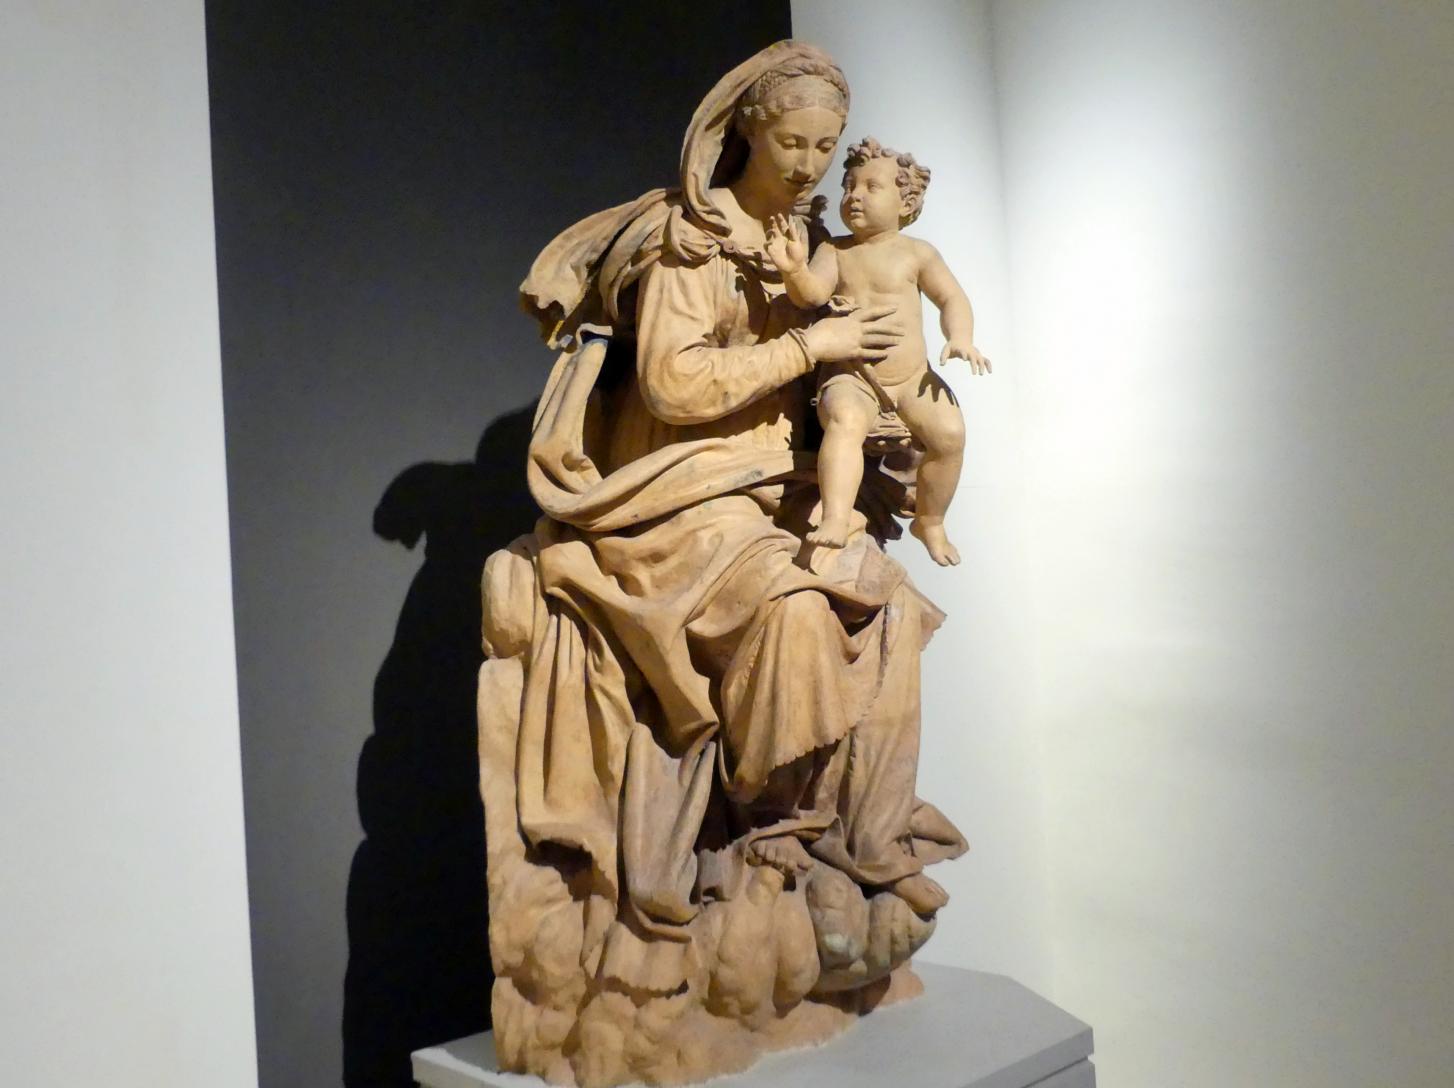 Antonio Begarelli (1529–1540), Maria mit Kind, Modena, Chiesa San Salvatore (am 13. Mai 1944 zerstört), jetzt Modena, Galleria Estense, Saal 11, um 1540, Bild 2/5